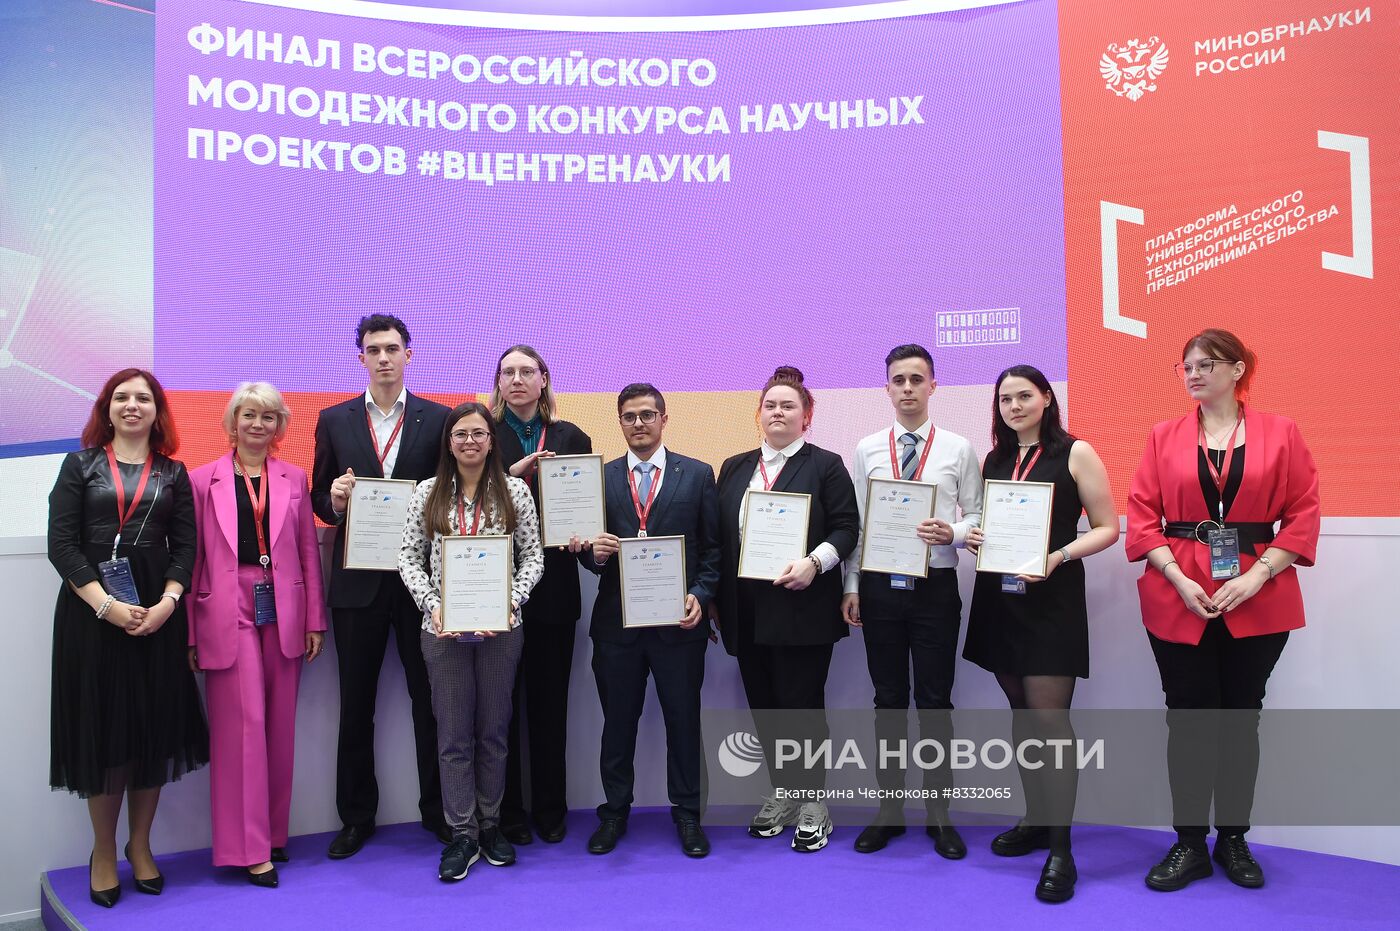 II КМУ-2022. Церемония награждения победителей Всероссийского молодежного конкурса научных проектов #ВЦЕНТРЕНАУКИ